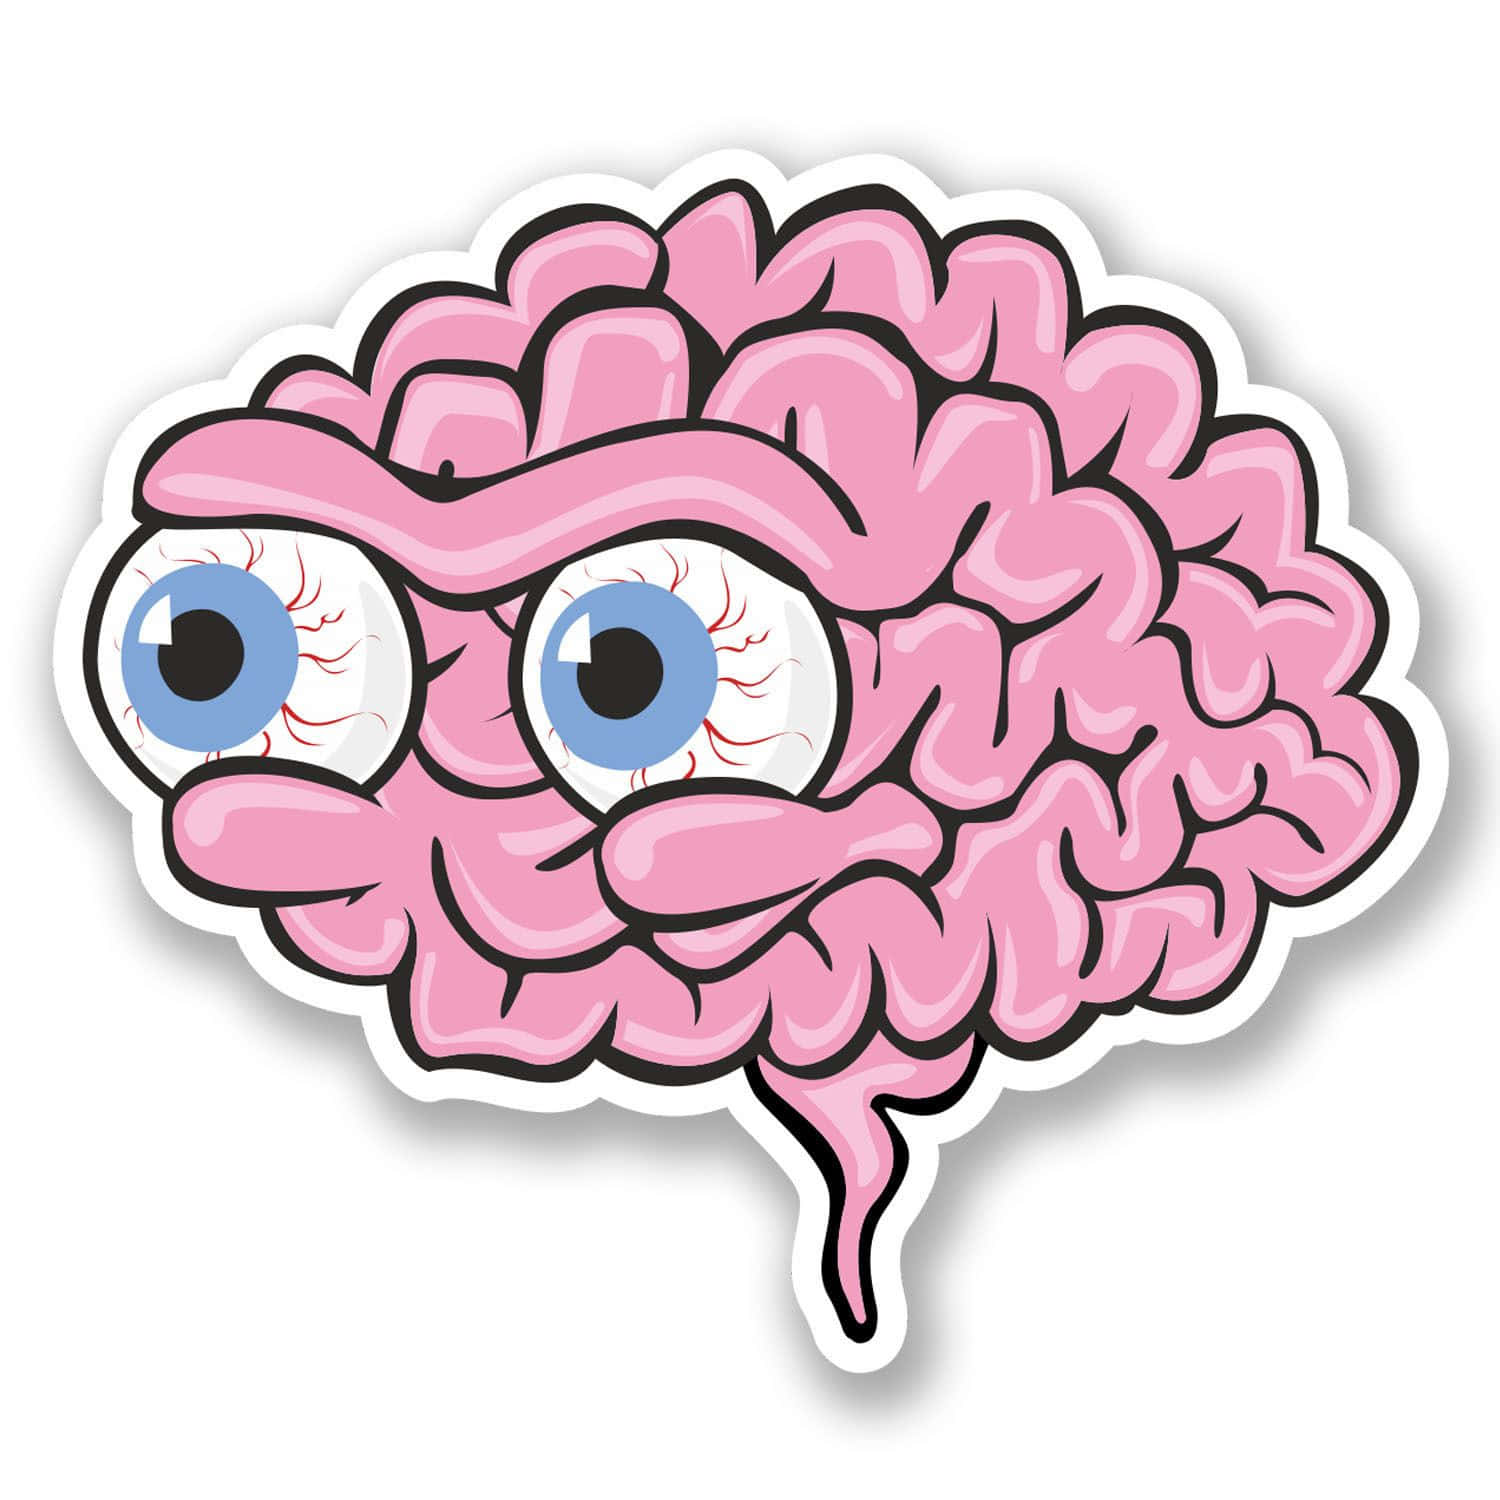 En pink hjernesticker med øjne og en mund